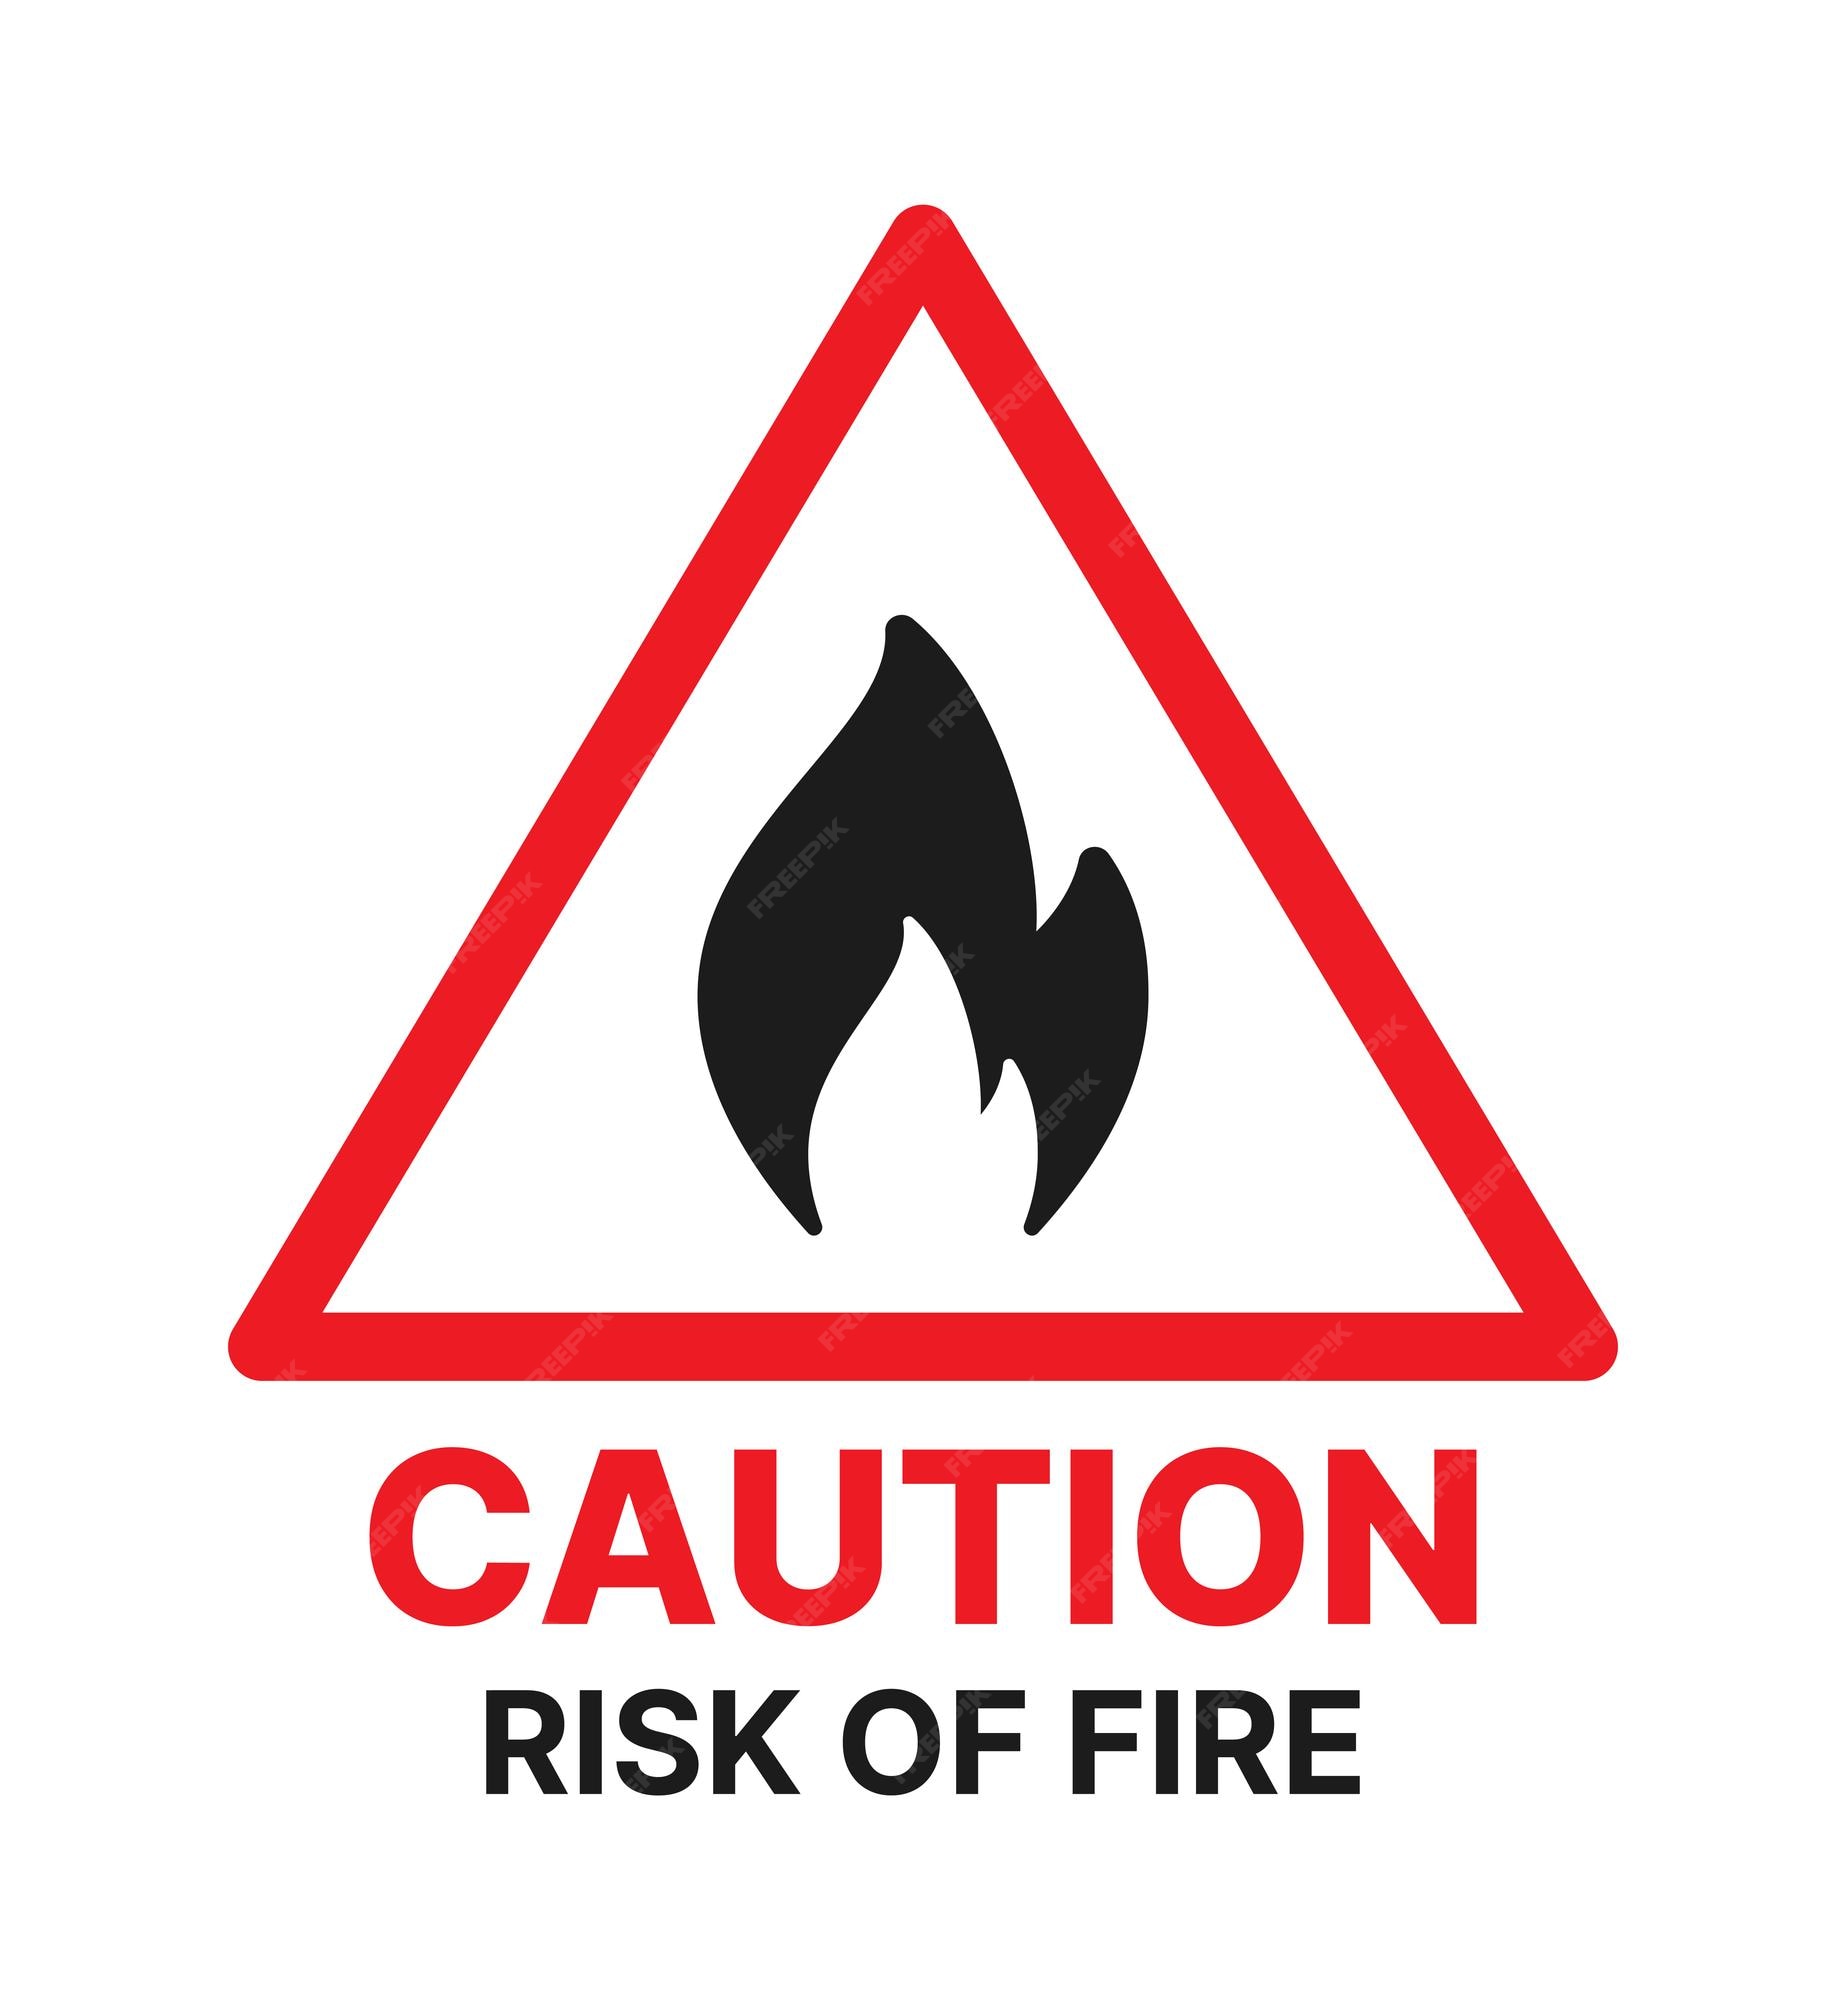 Biểu tượng cảnh báo giúp bạn đề phòng những nguy hiểm tiềm ẩn. Hãy xem hình ảnh này để hiểu rõ hơn về biểu tượng cảnh báo và cách nó giúp bảo đảm an toàn cho bạn.